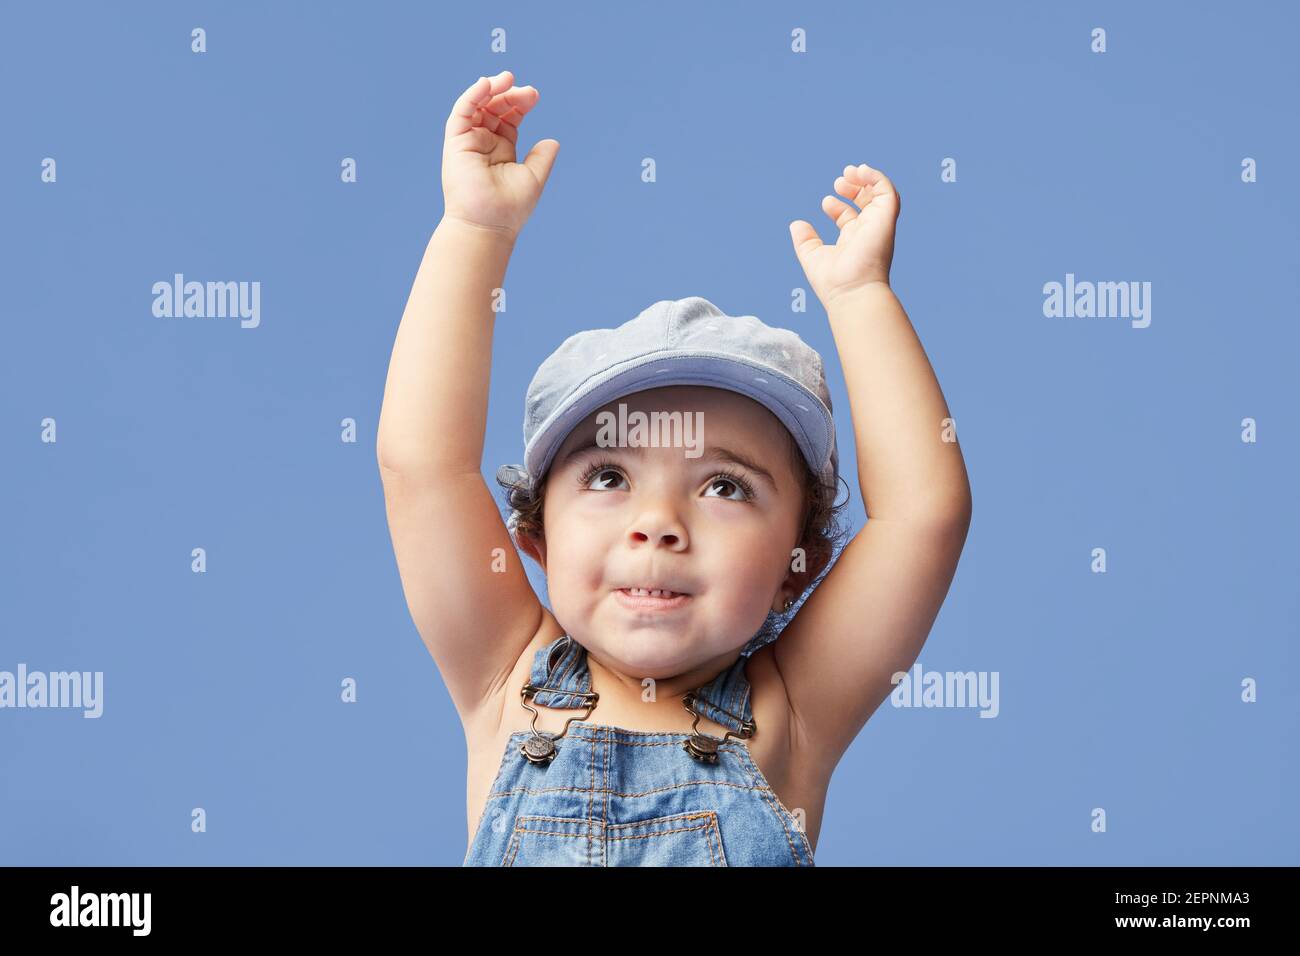 Charming barfuß Kind in Denim-Kleid und Kleid mit lockigen Die Haare blicken mit erhobenen Armen auf, während sie auf Blau tanzen Hintergrund Stockfoto